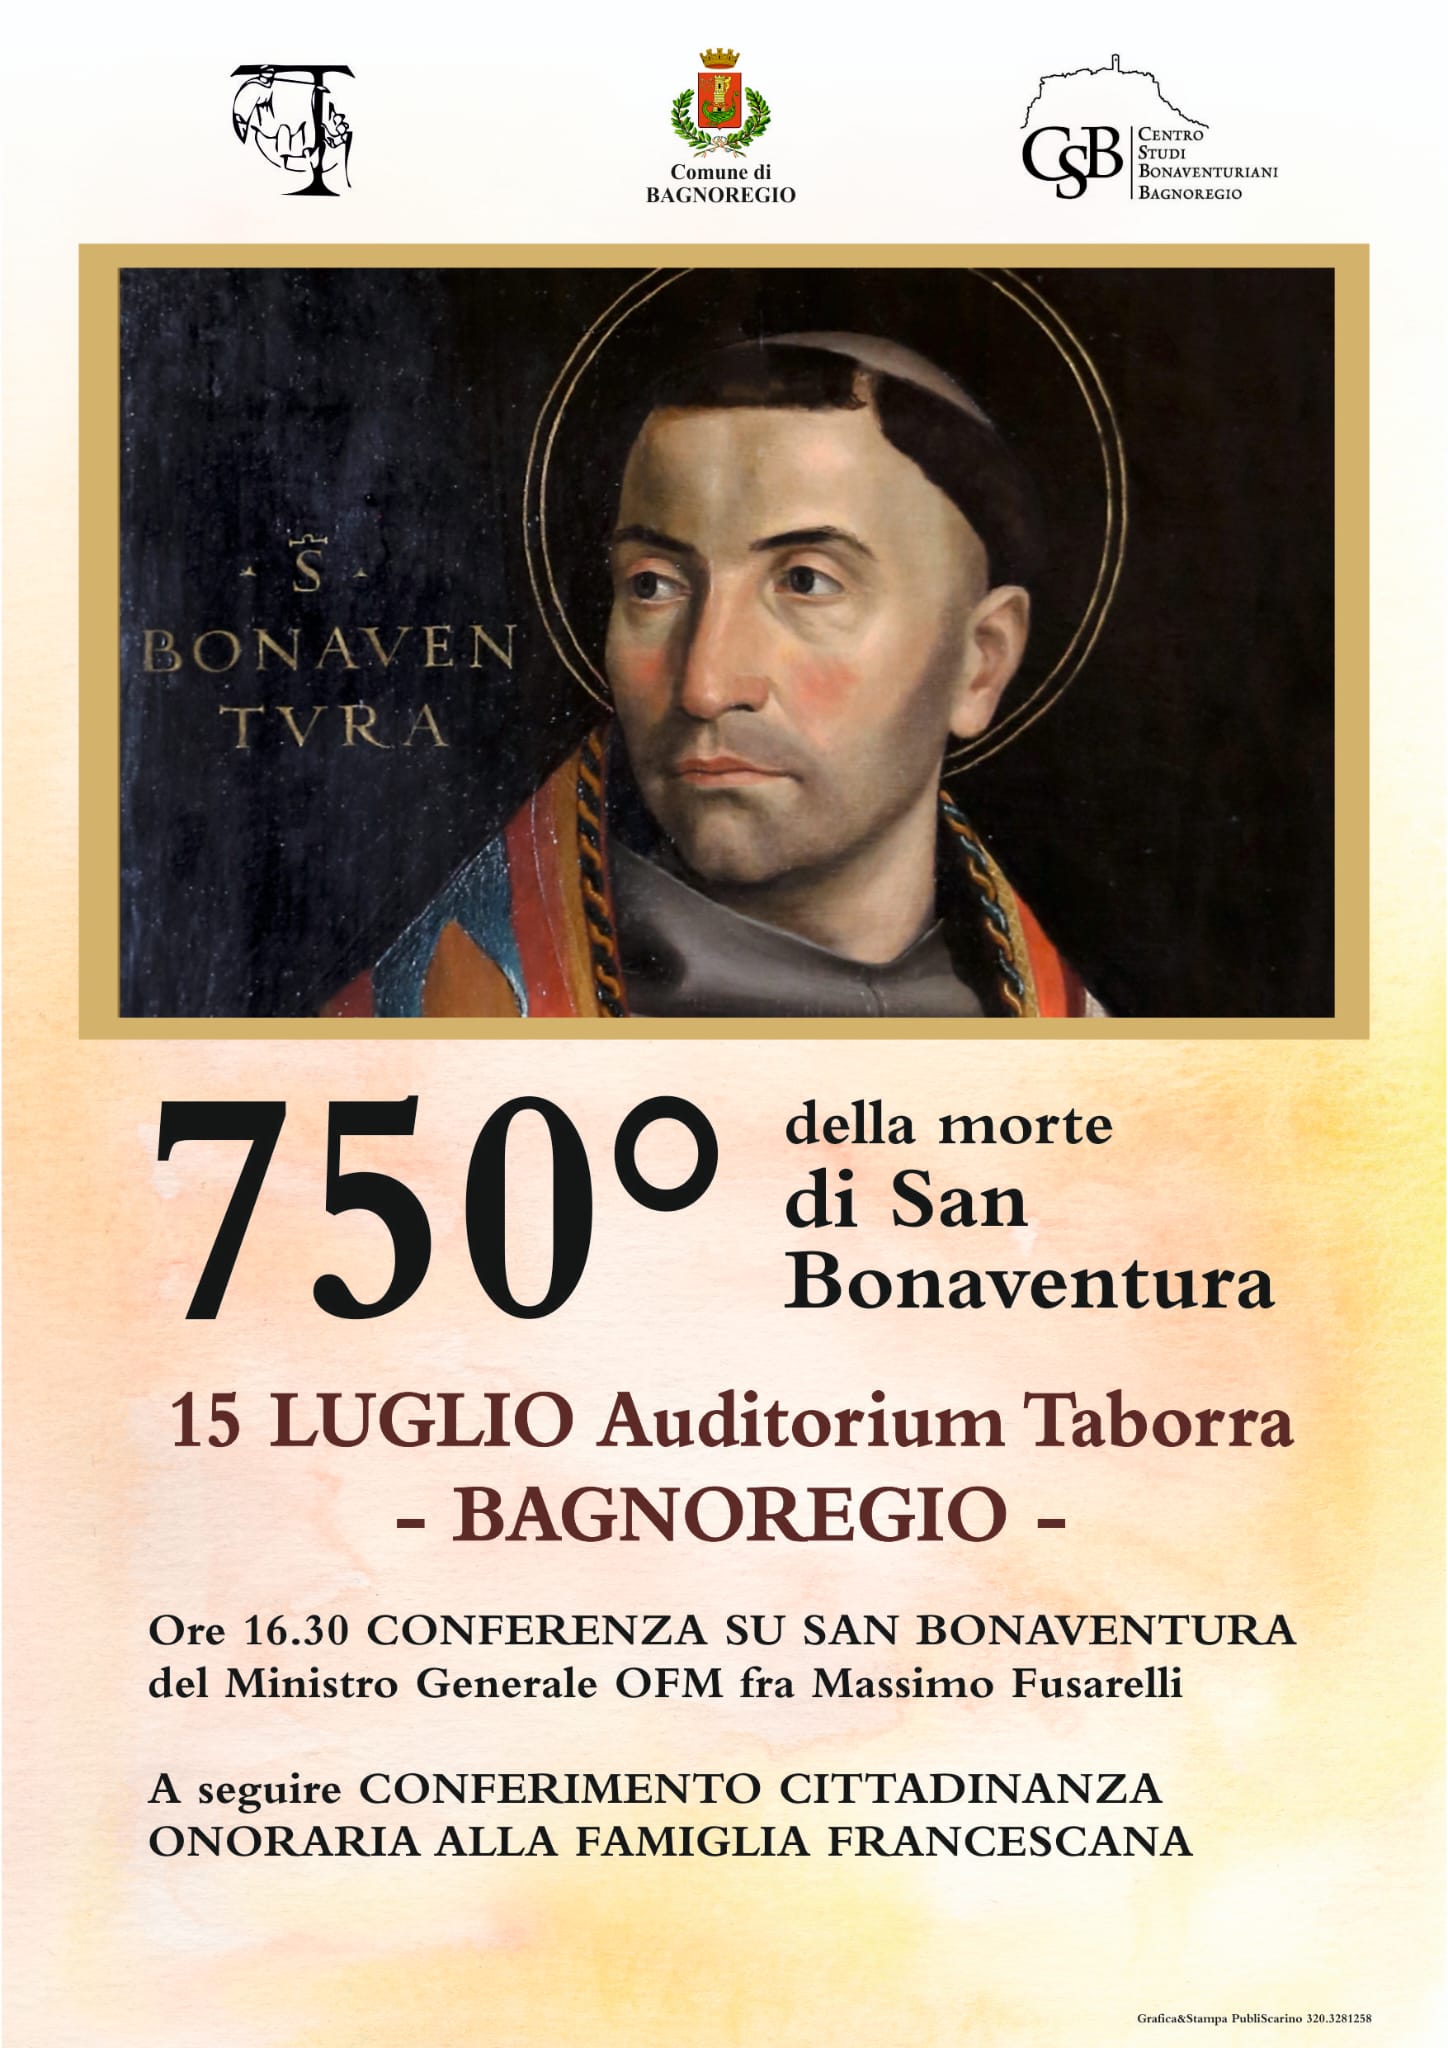 15 luglio, Bagnoregio – 750° della morte di San Bonaventura